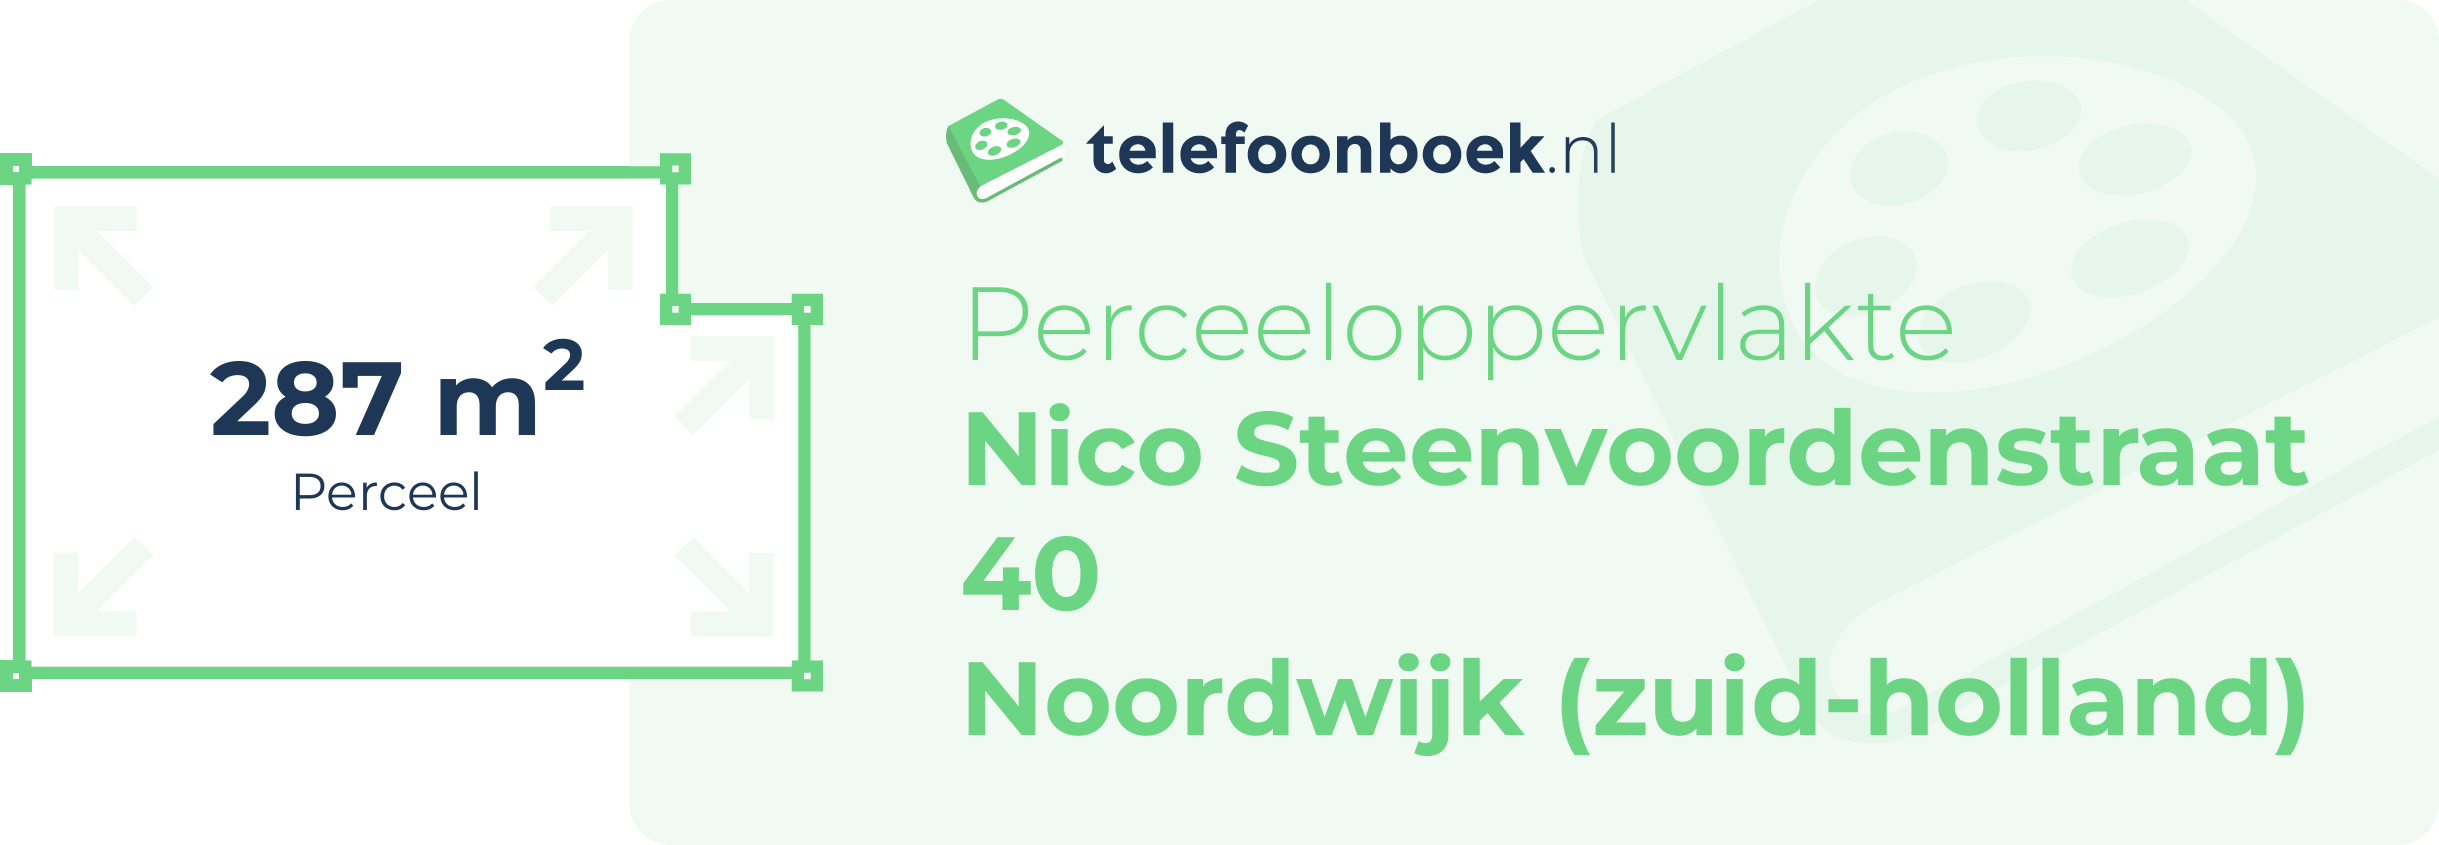 Perceeloppervlakte Nico Steenvoordenstraat 40 Noordwijk (Zuid-Holland)